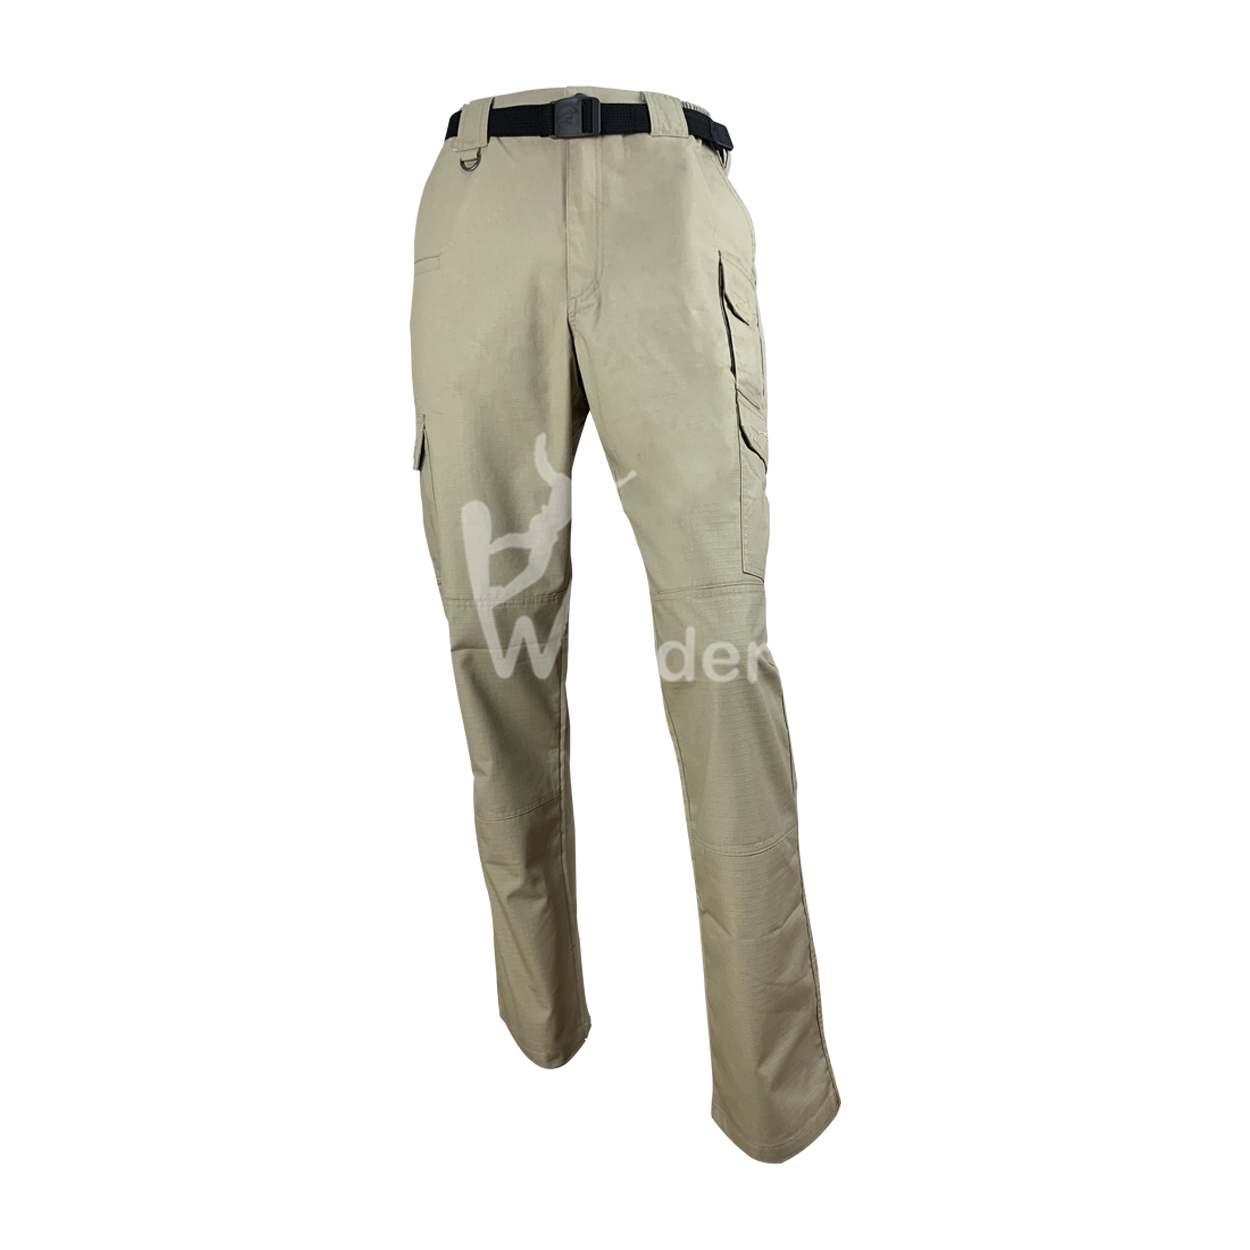 Wonders outdoor hiking pants design for outdoor-2